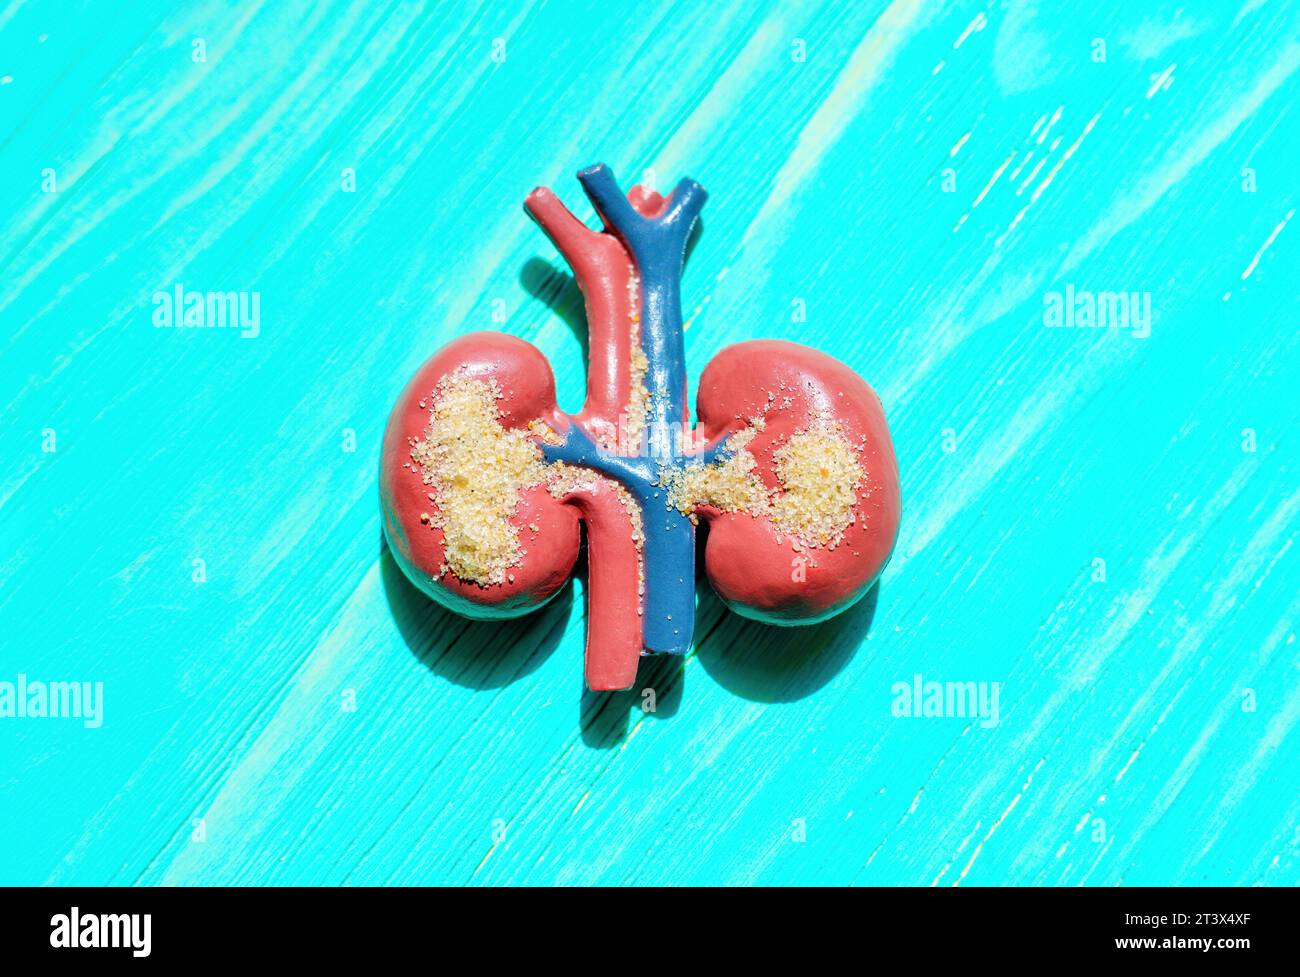 Anatomisches Modell, das menschliche Nieren mit sandähnlichen Partikeln darstellt, symbolisiert die Gesundheit der Niere und potenzielle Probleme. Stockfoto